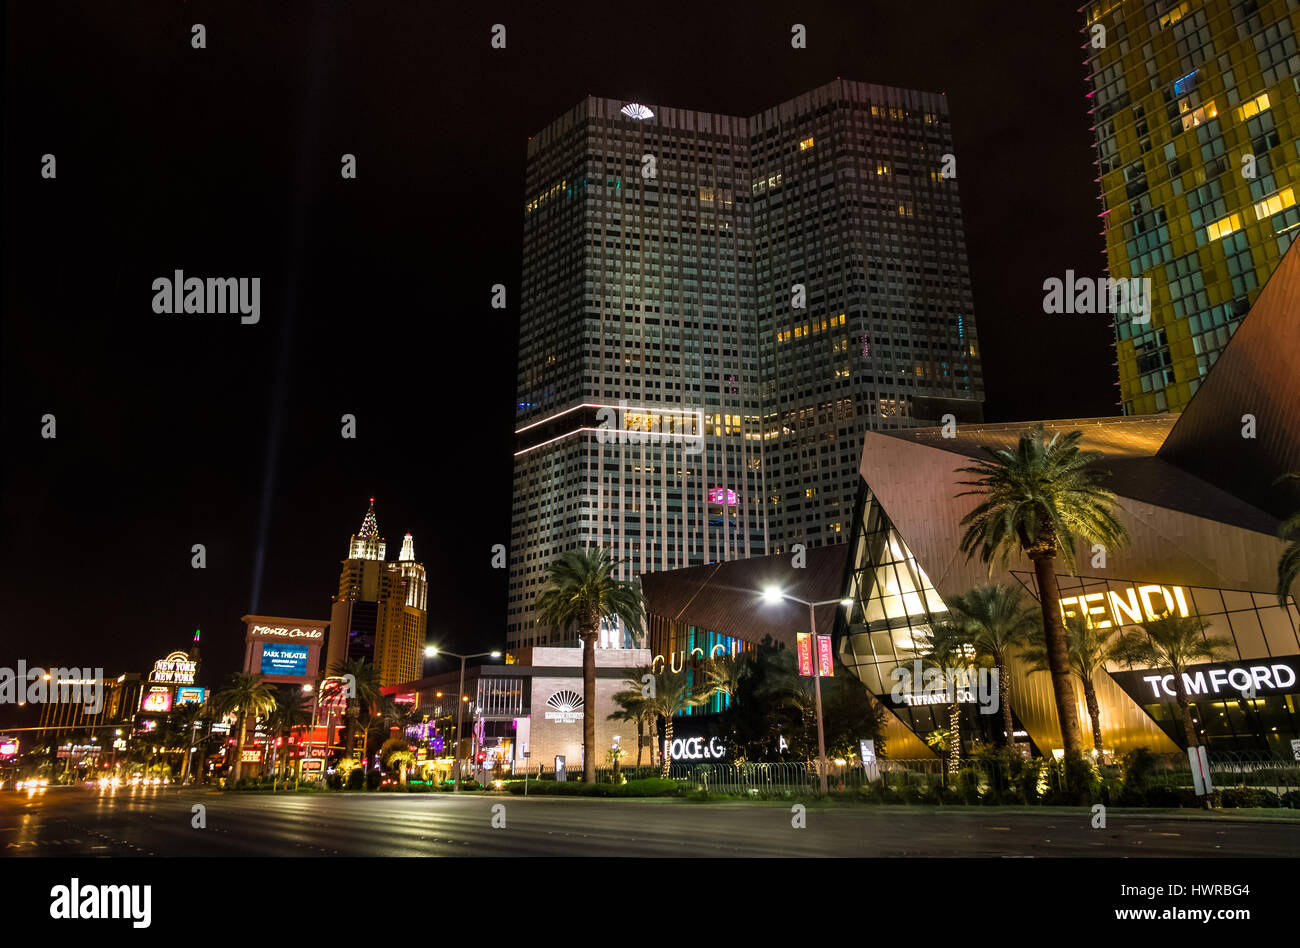 Las Vegas Strip at night - Las Vegas, Nevada, USA Stock Photo